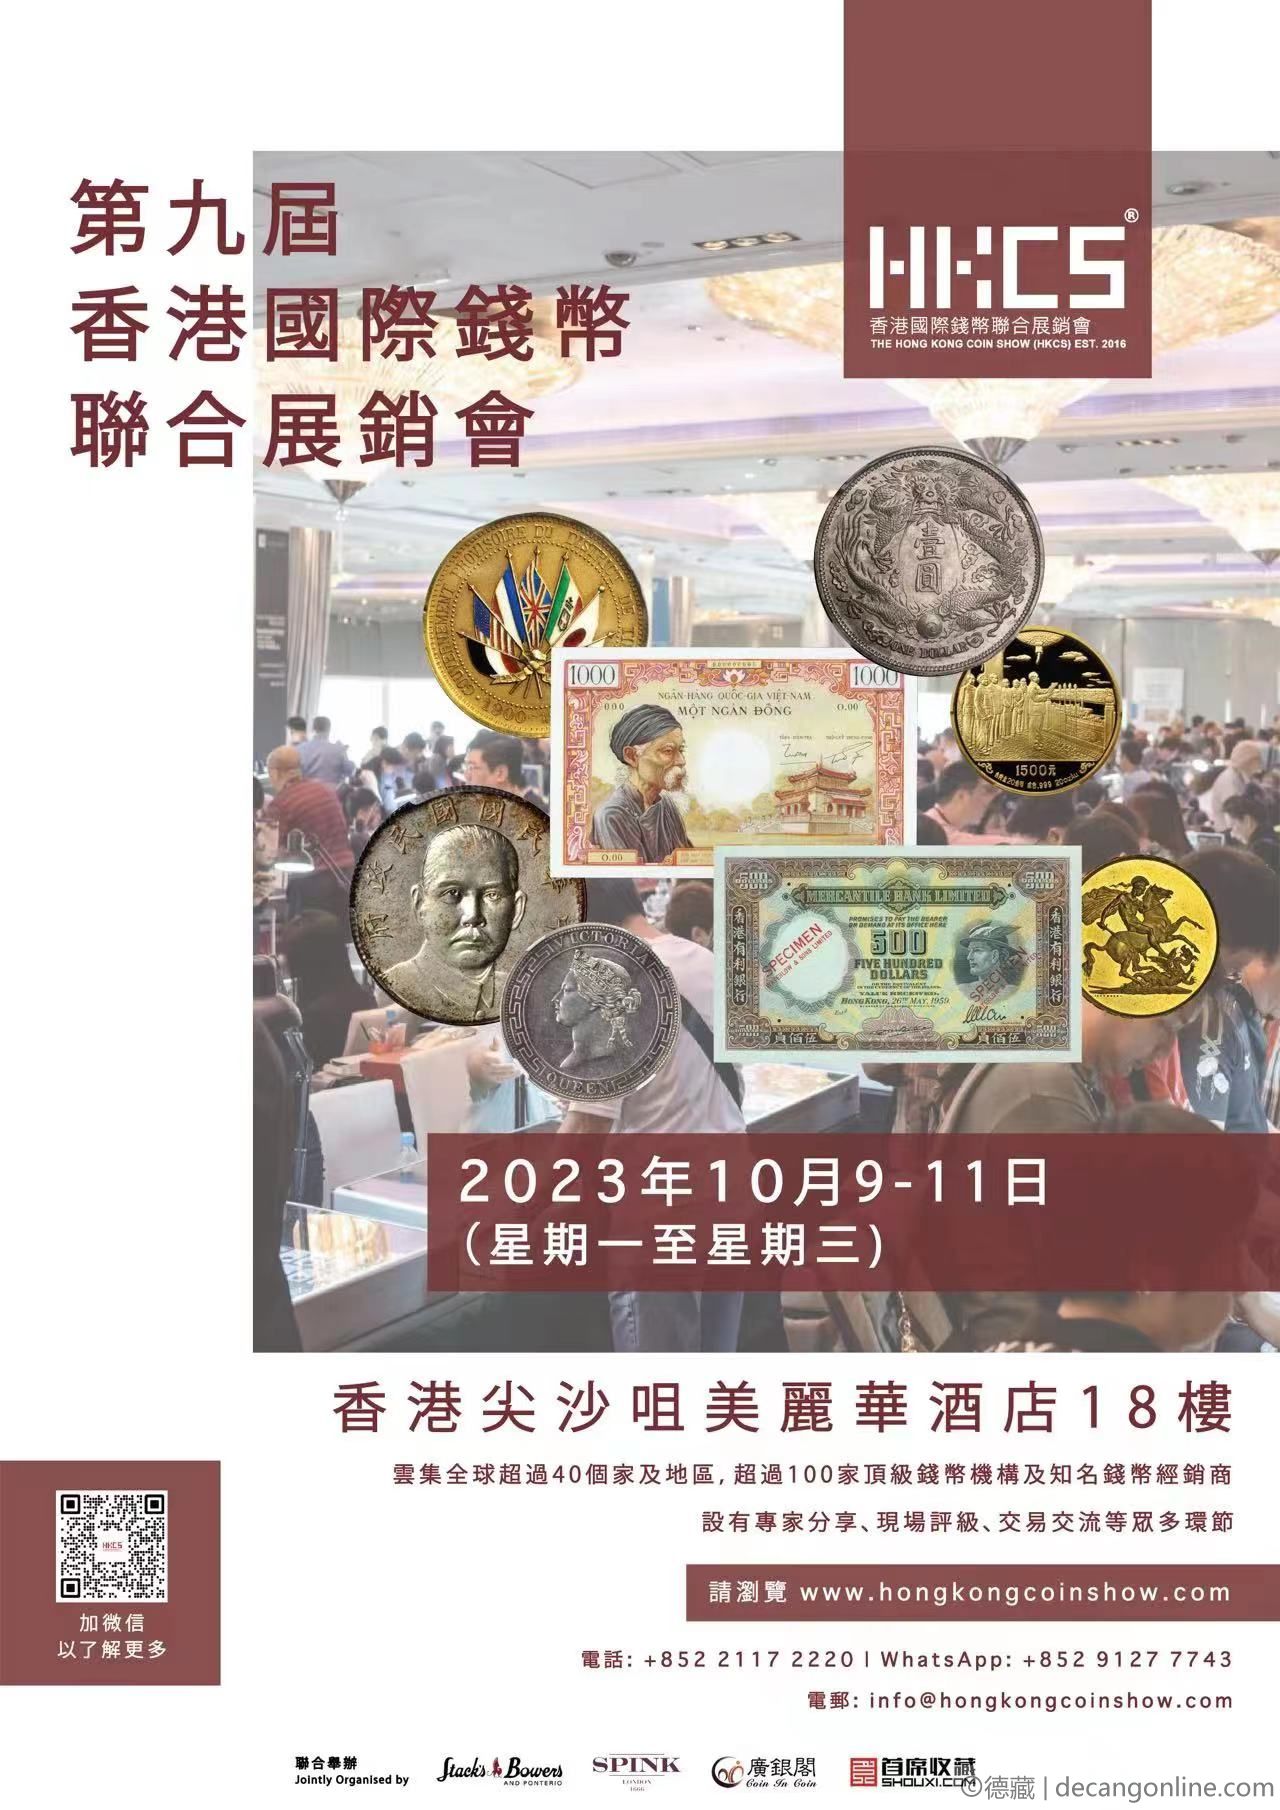 德藏将参展2023年10月9-11日HKCS香港国际钱币联合展销会